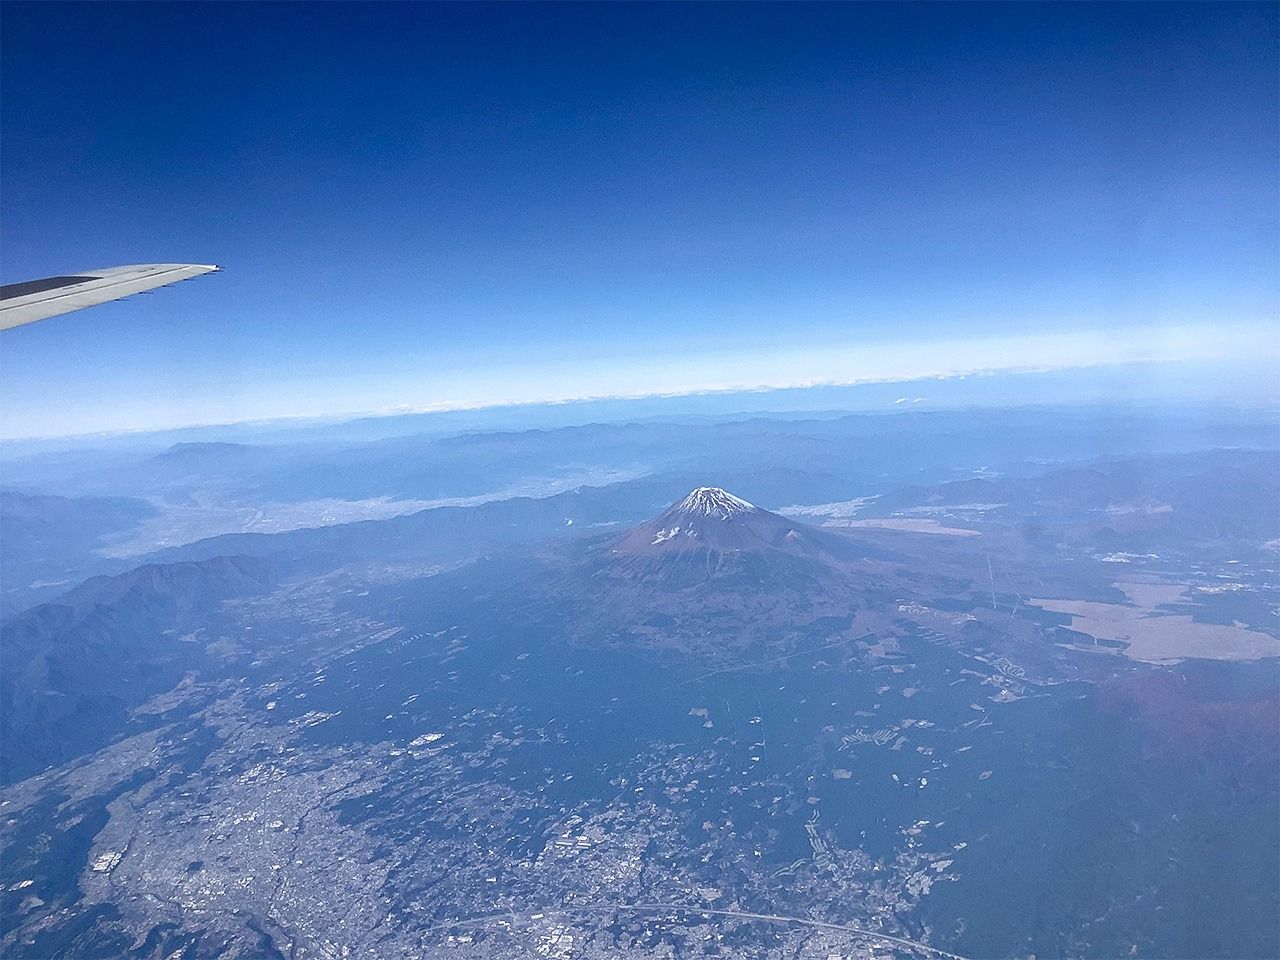 El monte Fuji, con un pico único y sin otras elevaciones a su alrededor, constituye un enclave óptimo para observar la atmósfera. (Imagen cedida por el autor del artículo.) 